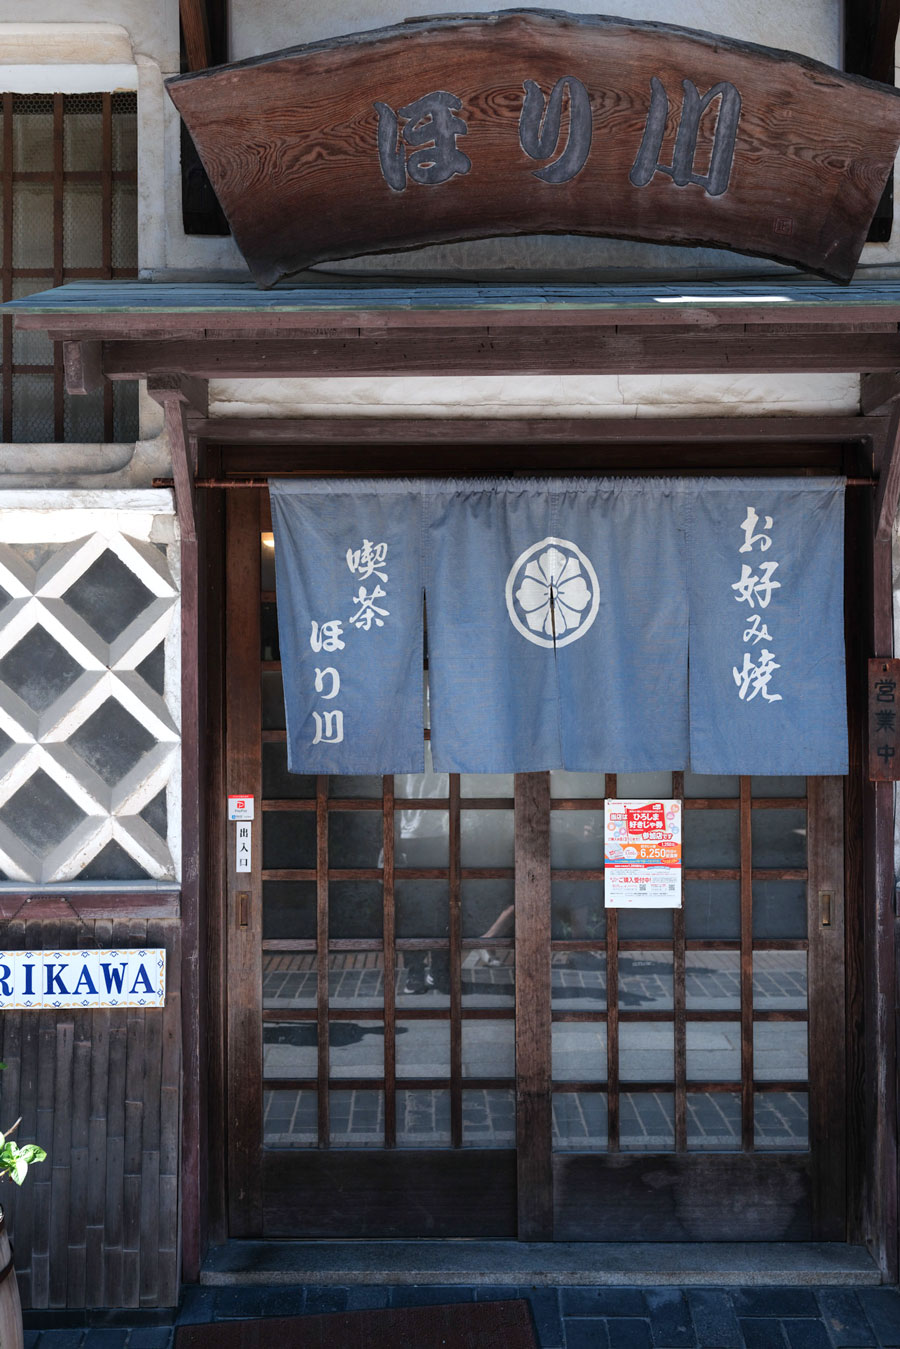 【ほり川】1919年創業「ほり川醤油店」の古い醤油蔵を改装したお好み焼喫茶「ほり川」。 